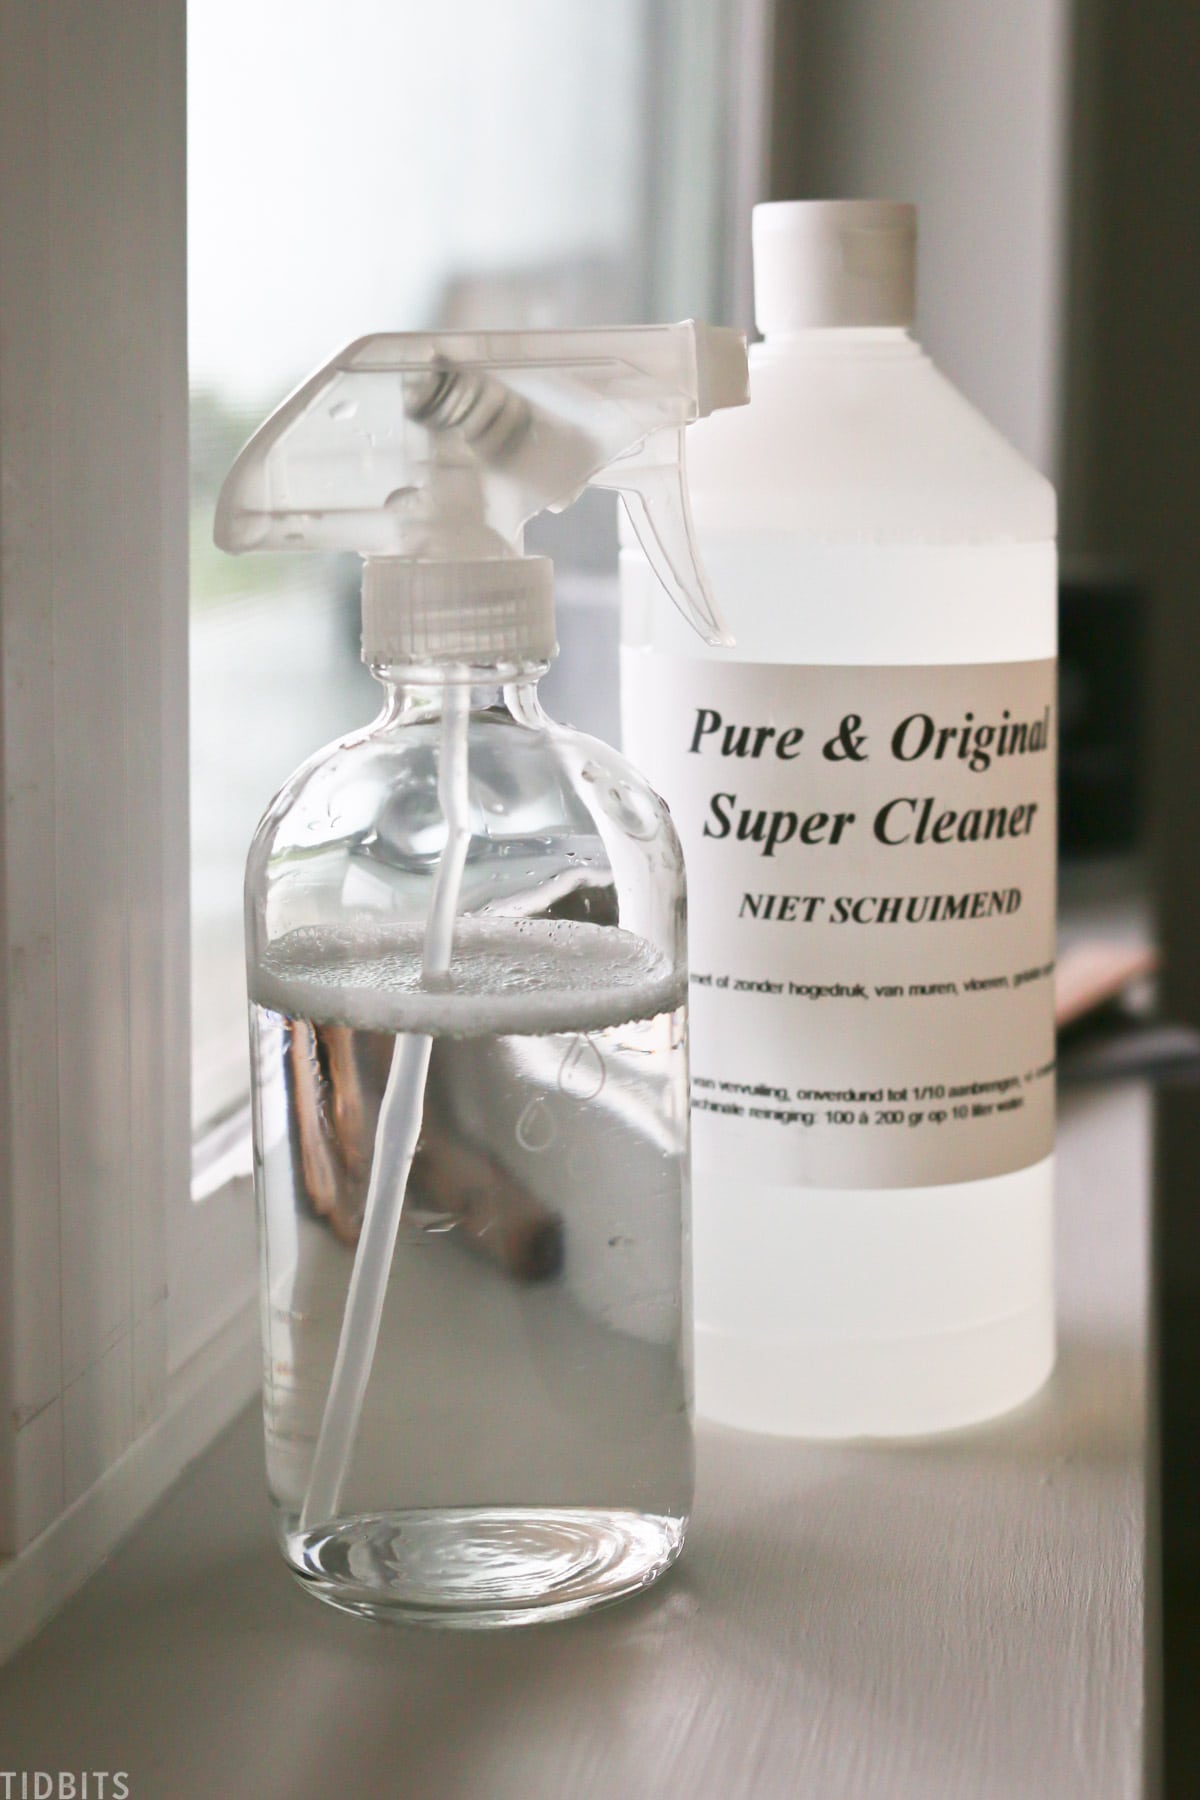 Pure & Original Super Cleaner